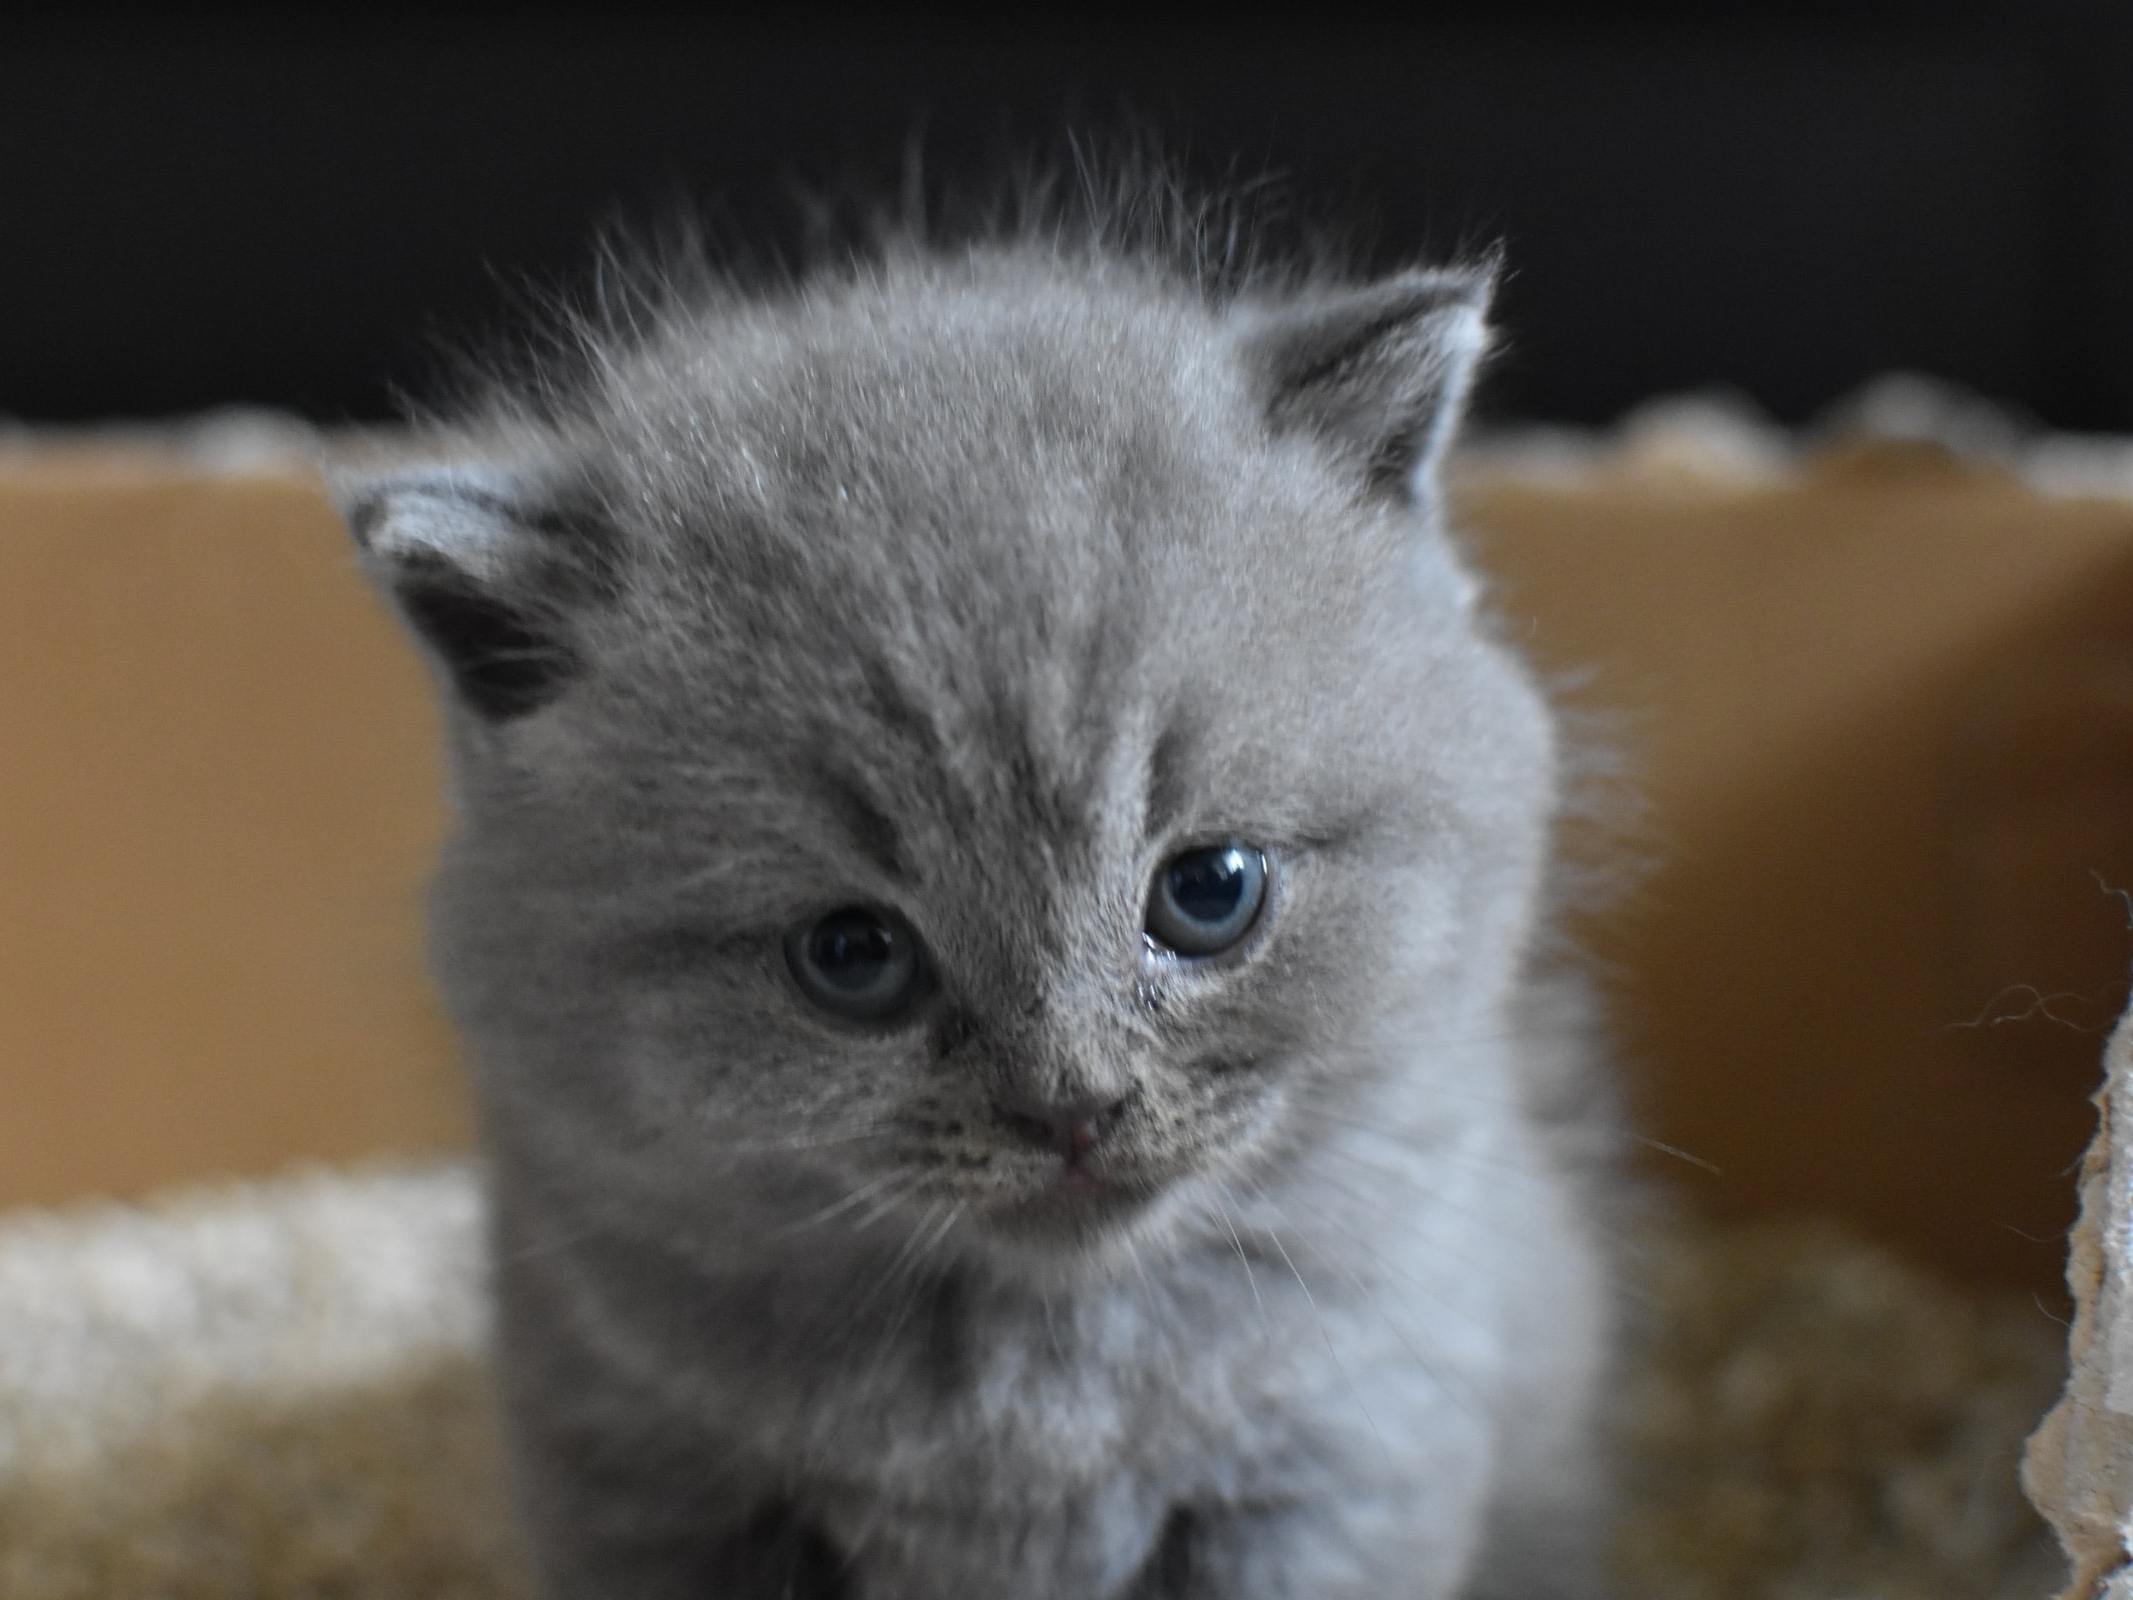 A kitten in a litter box.